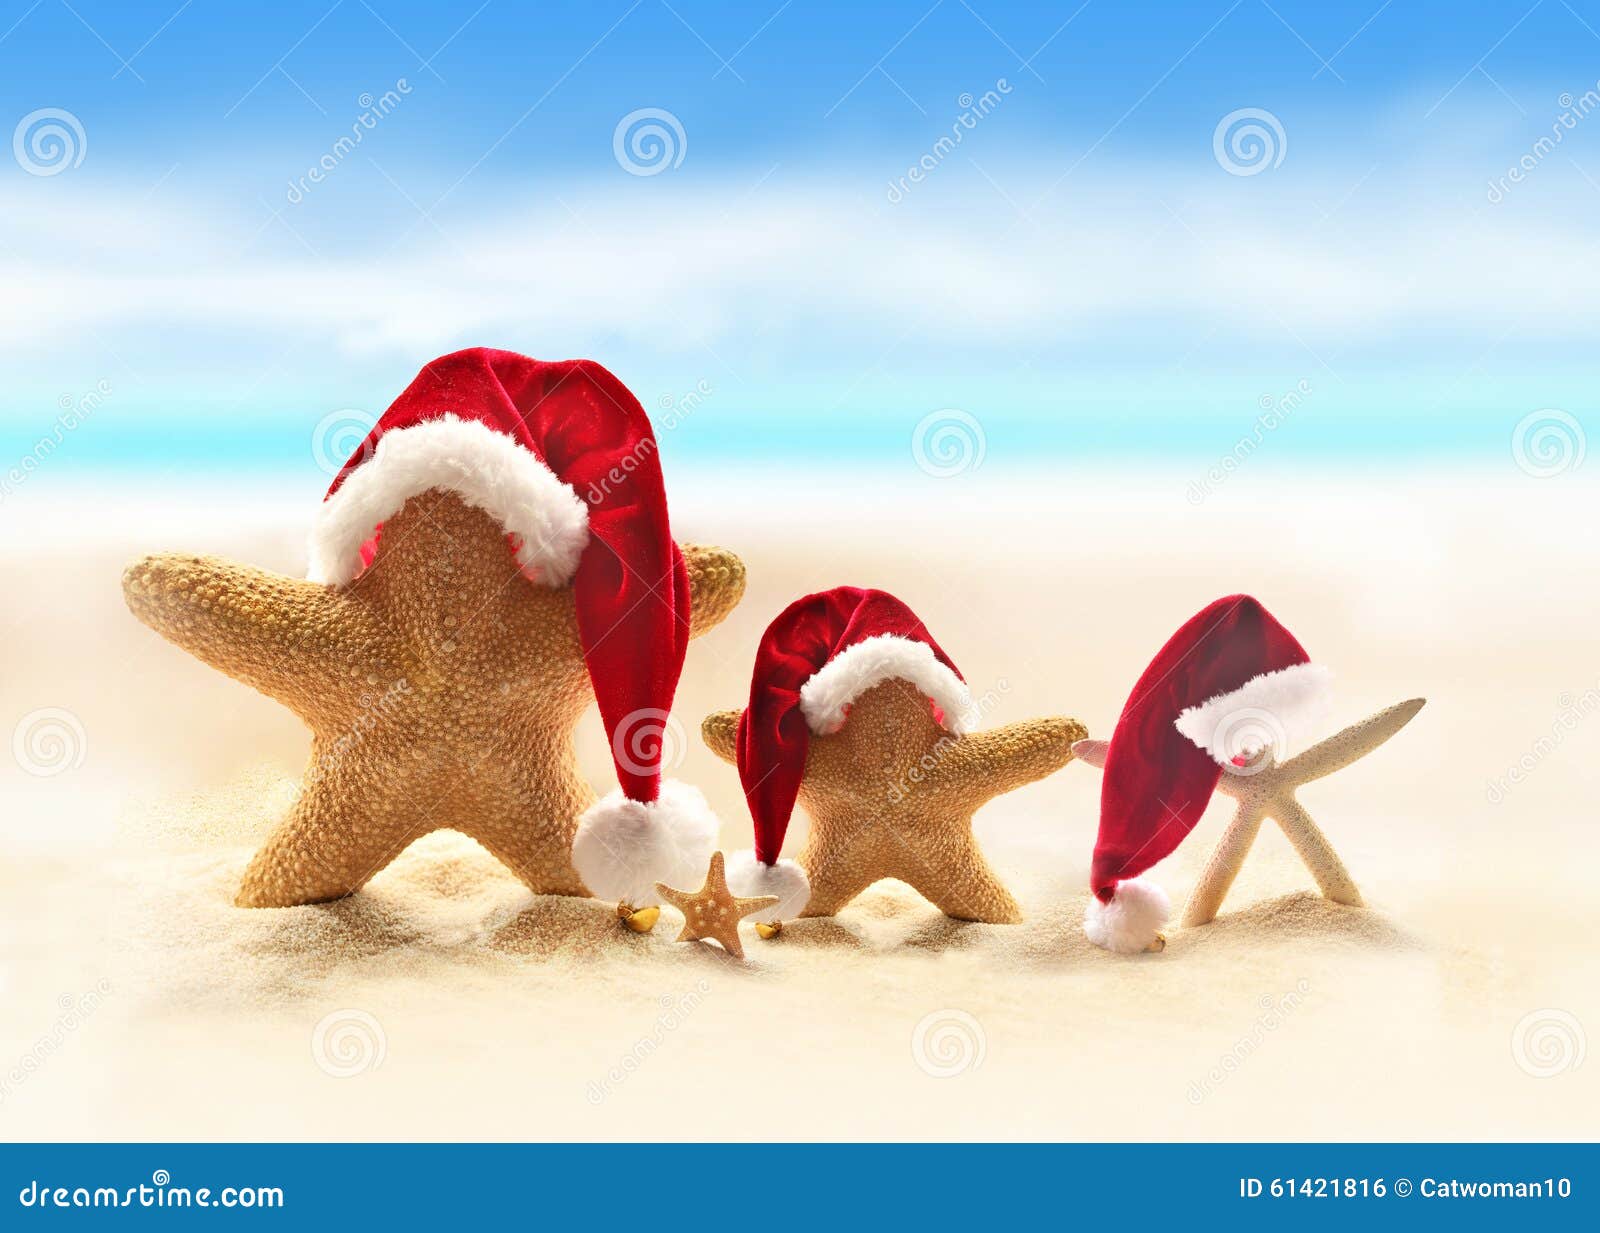 Download Starfish Summer Beach And Santa Hat Stock Image of ocean santa